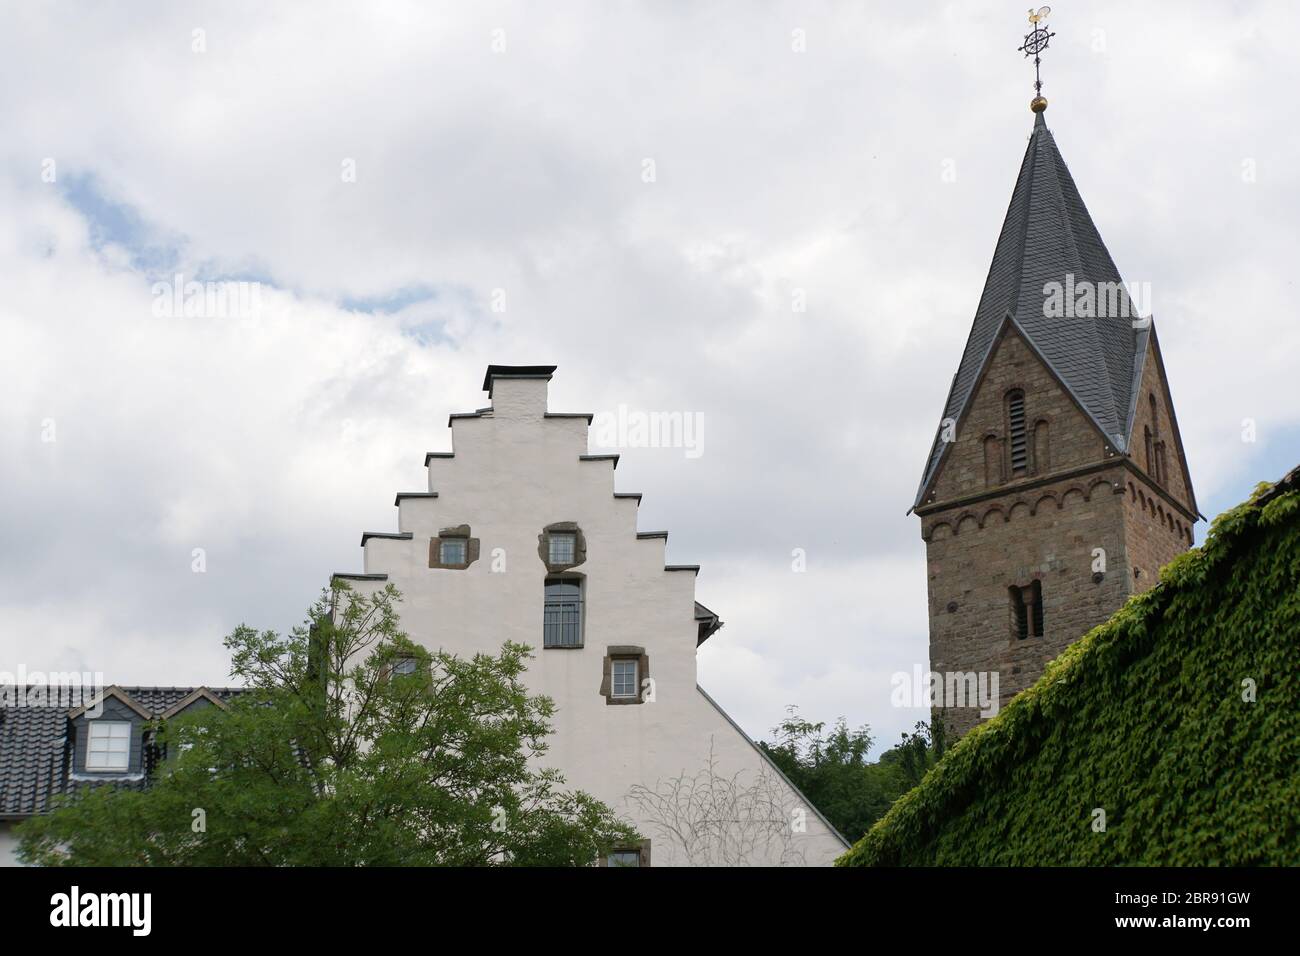 Burg und von Kallmuth Kirchturm St Georg, Mechernich, Nordrhein-Westfalen, Deutschland Banque D'Images